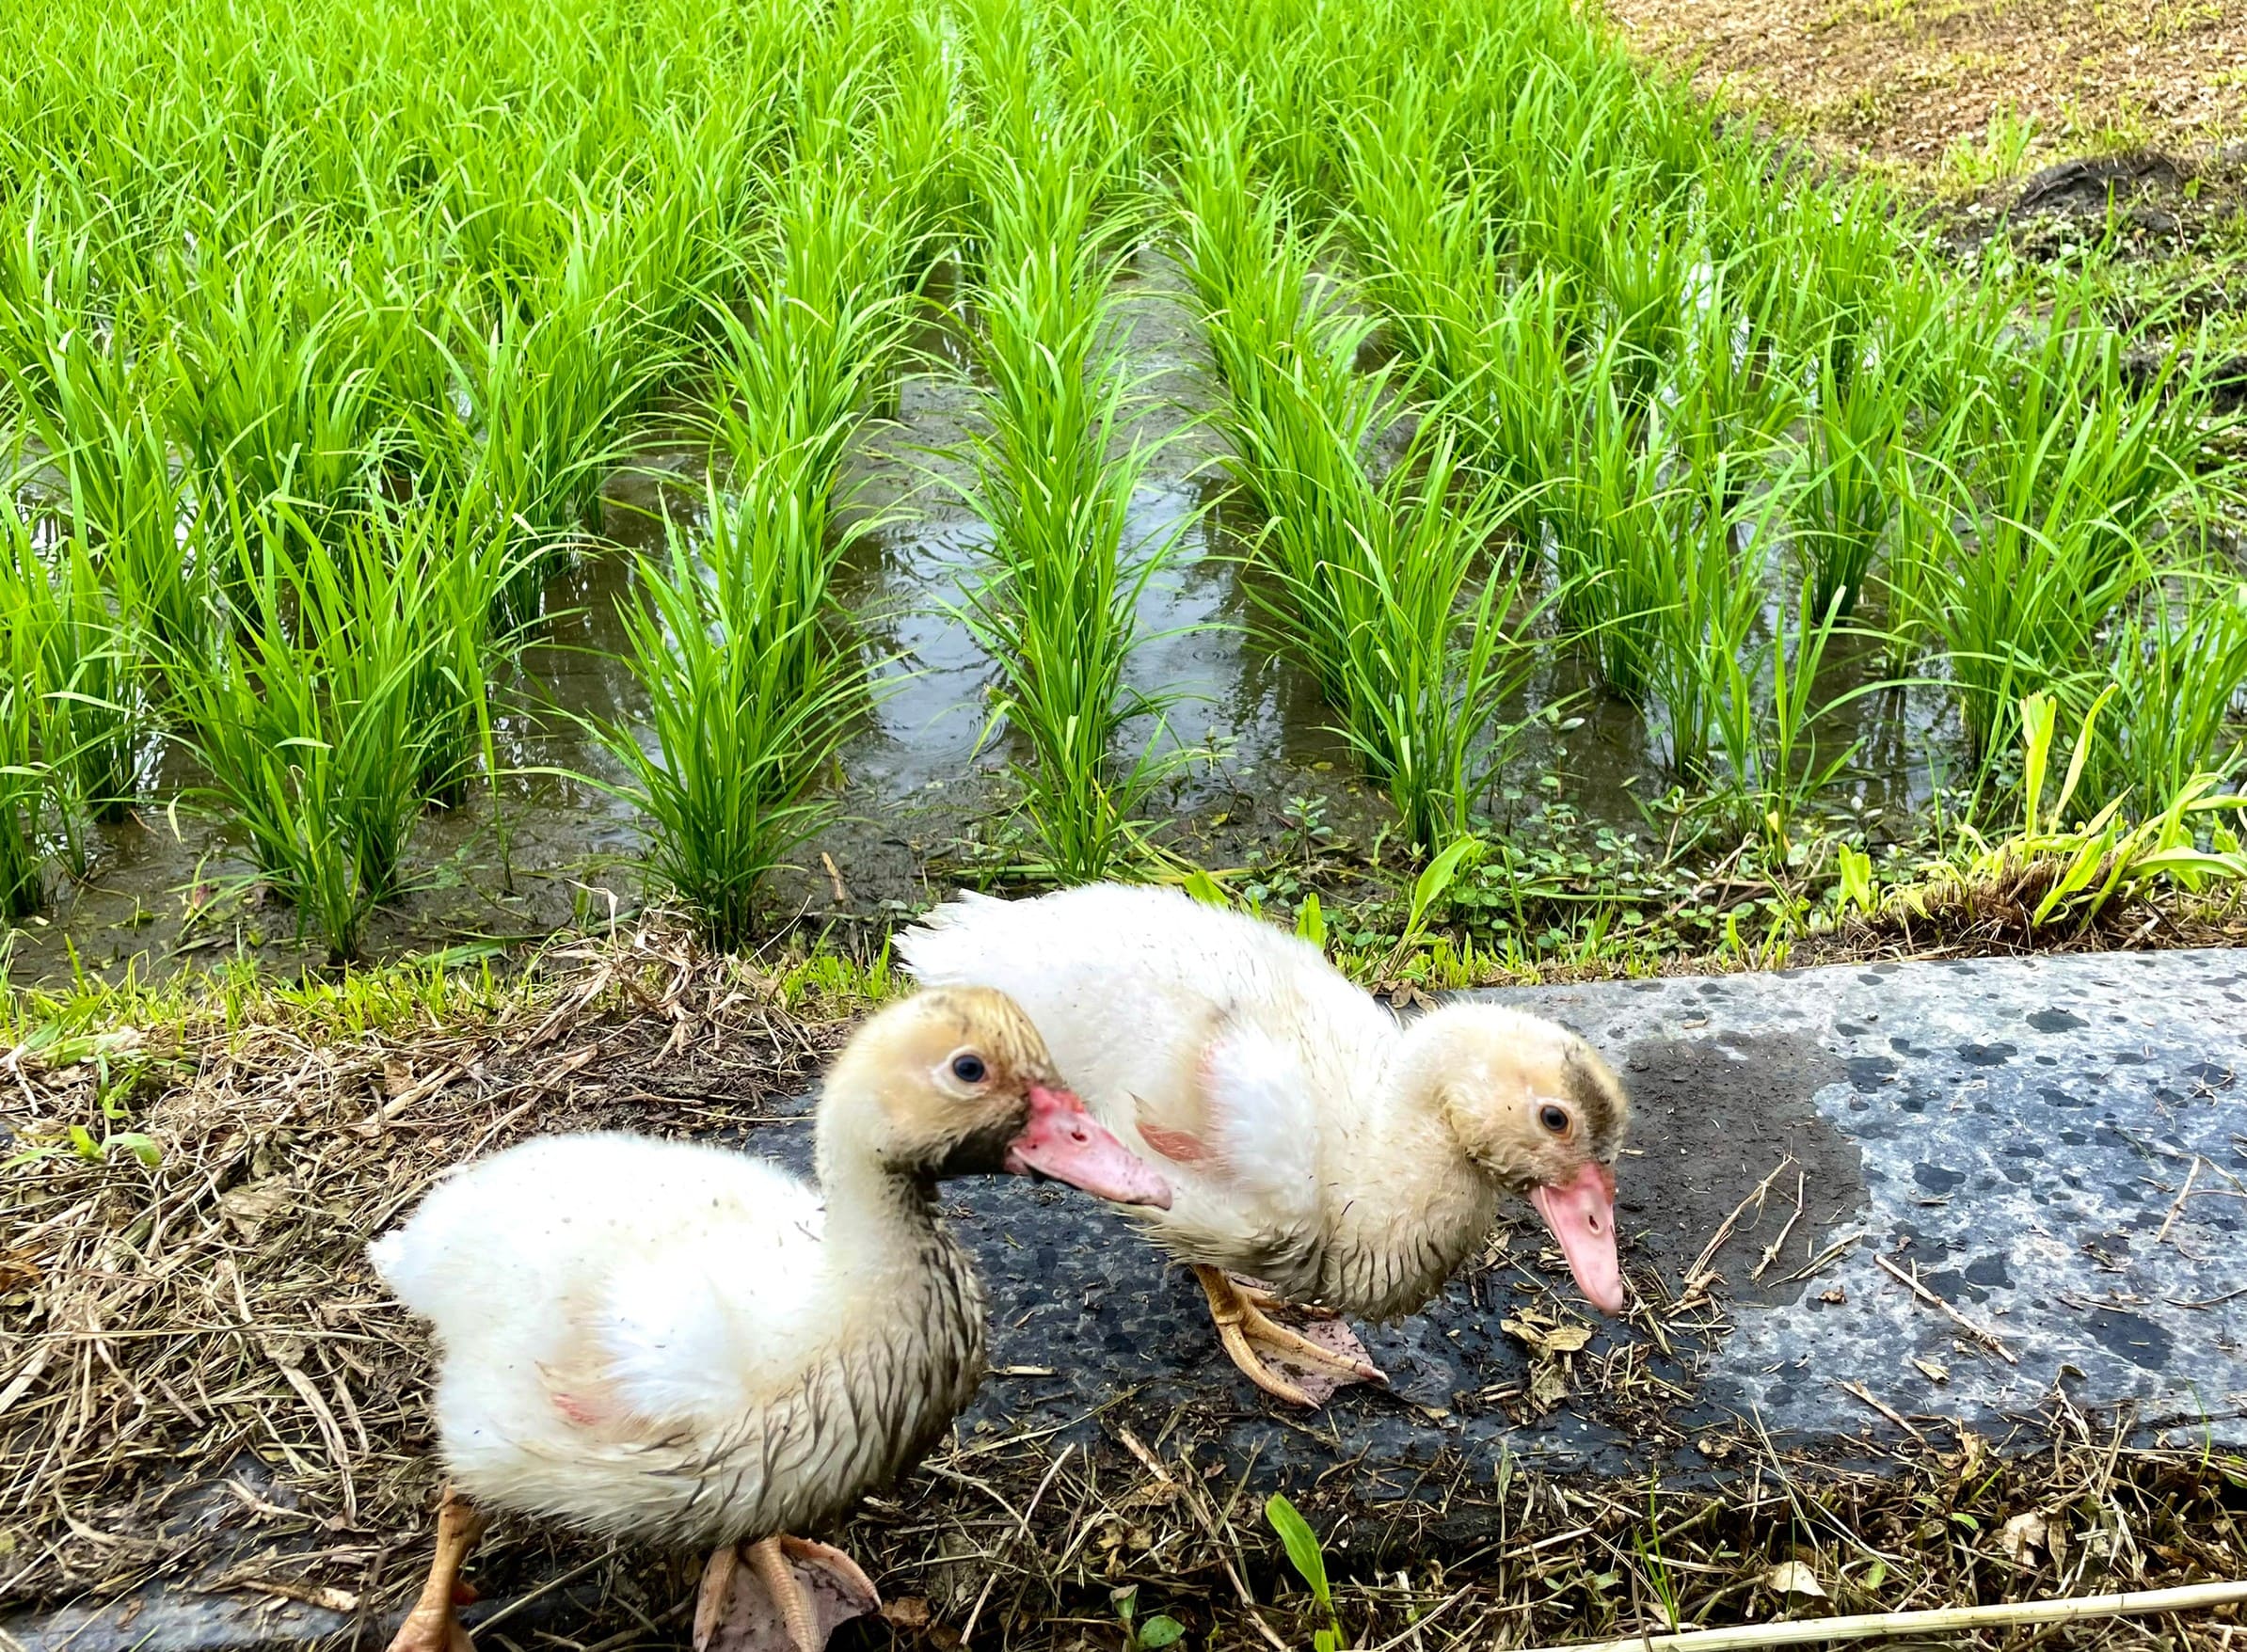 環境永續護農地 鴨稻共生成新亮點